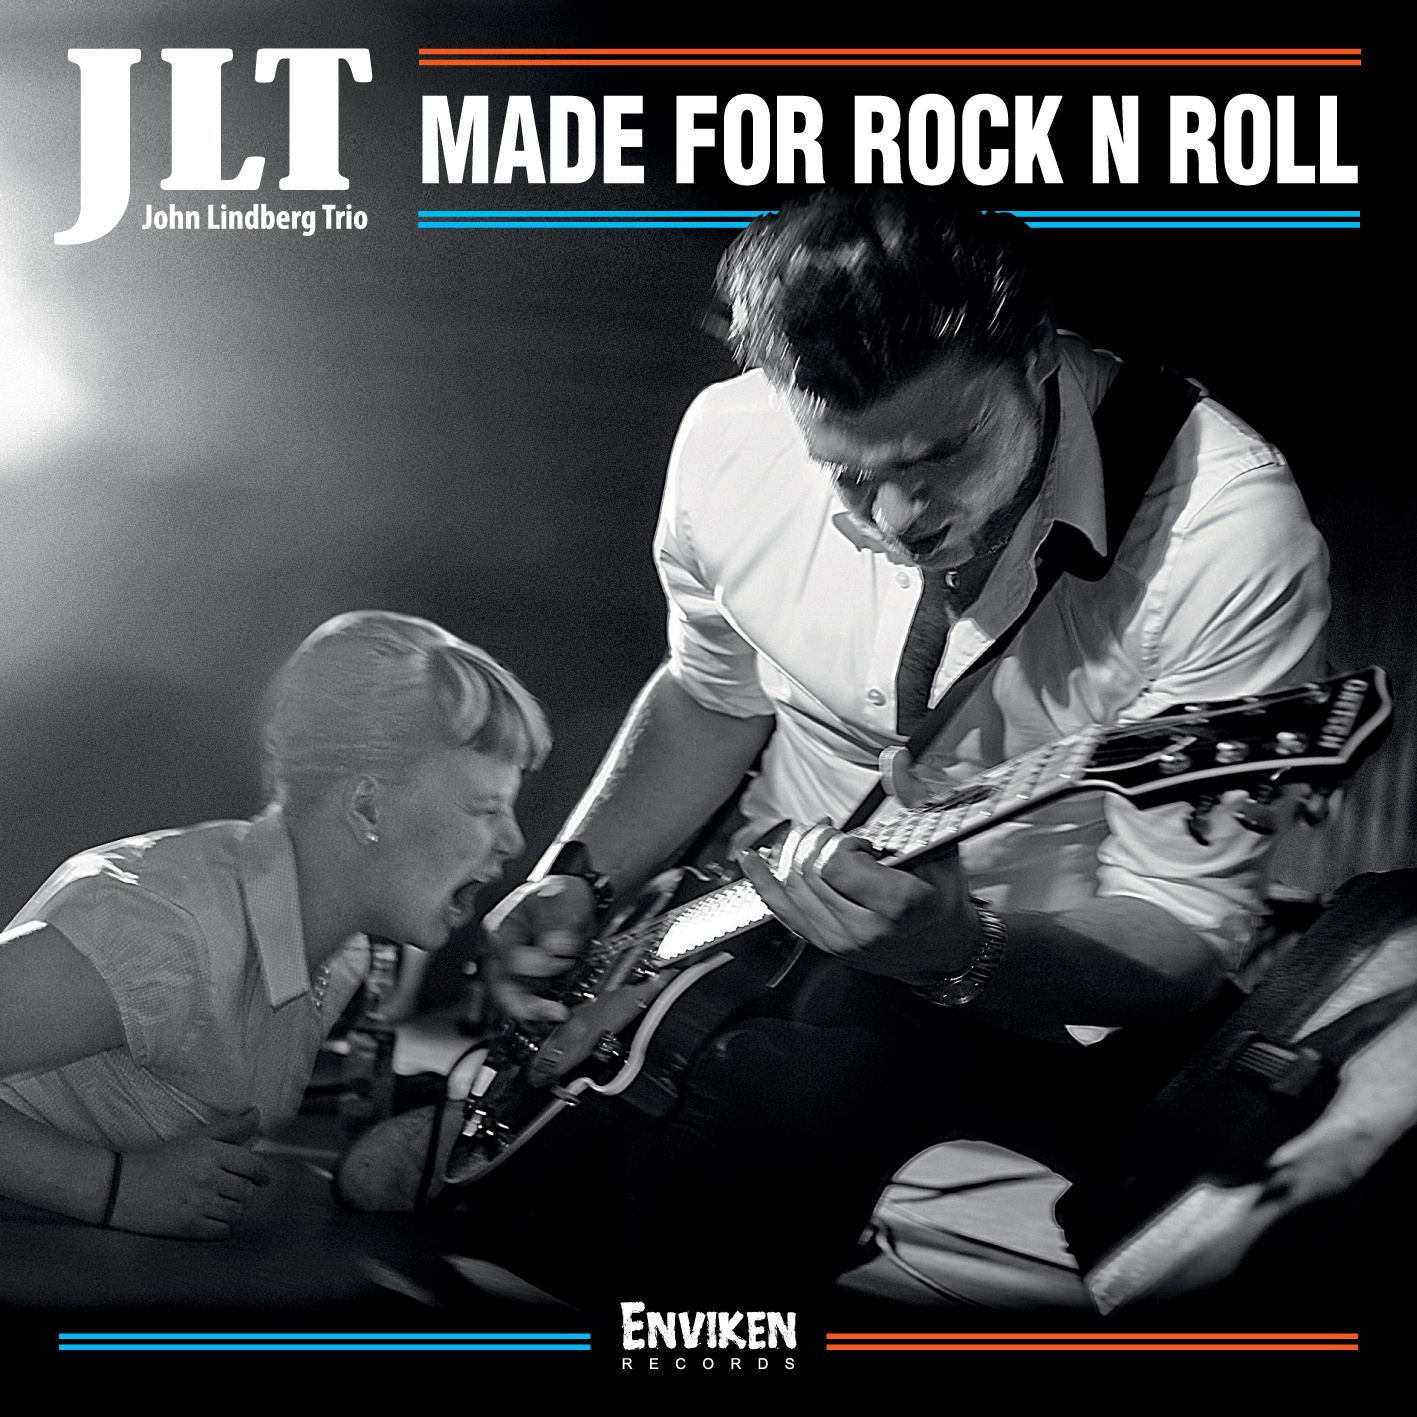 JLT (John Lindberg Trio) - Made For Rock n Roll (Gold vinyl)